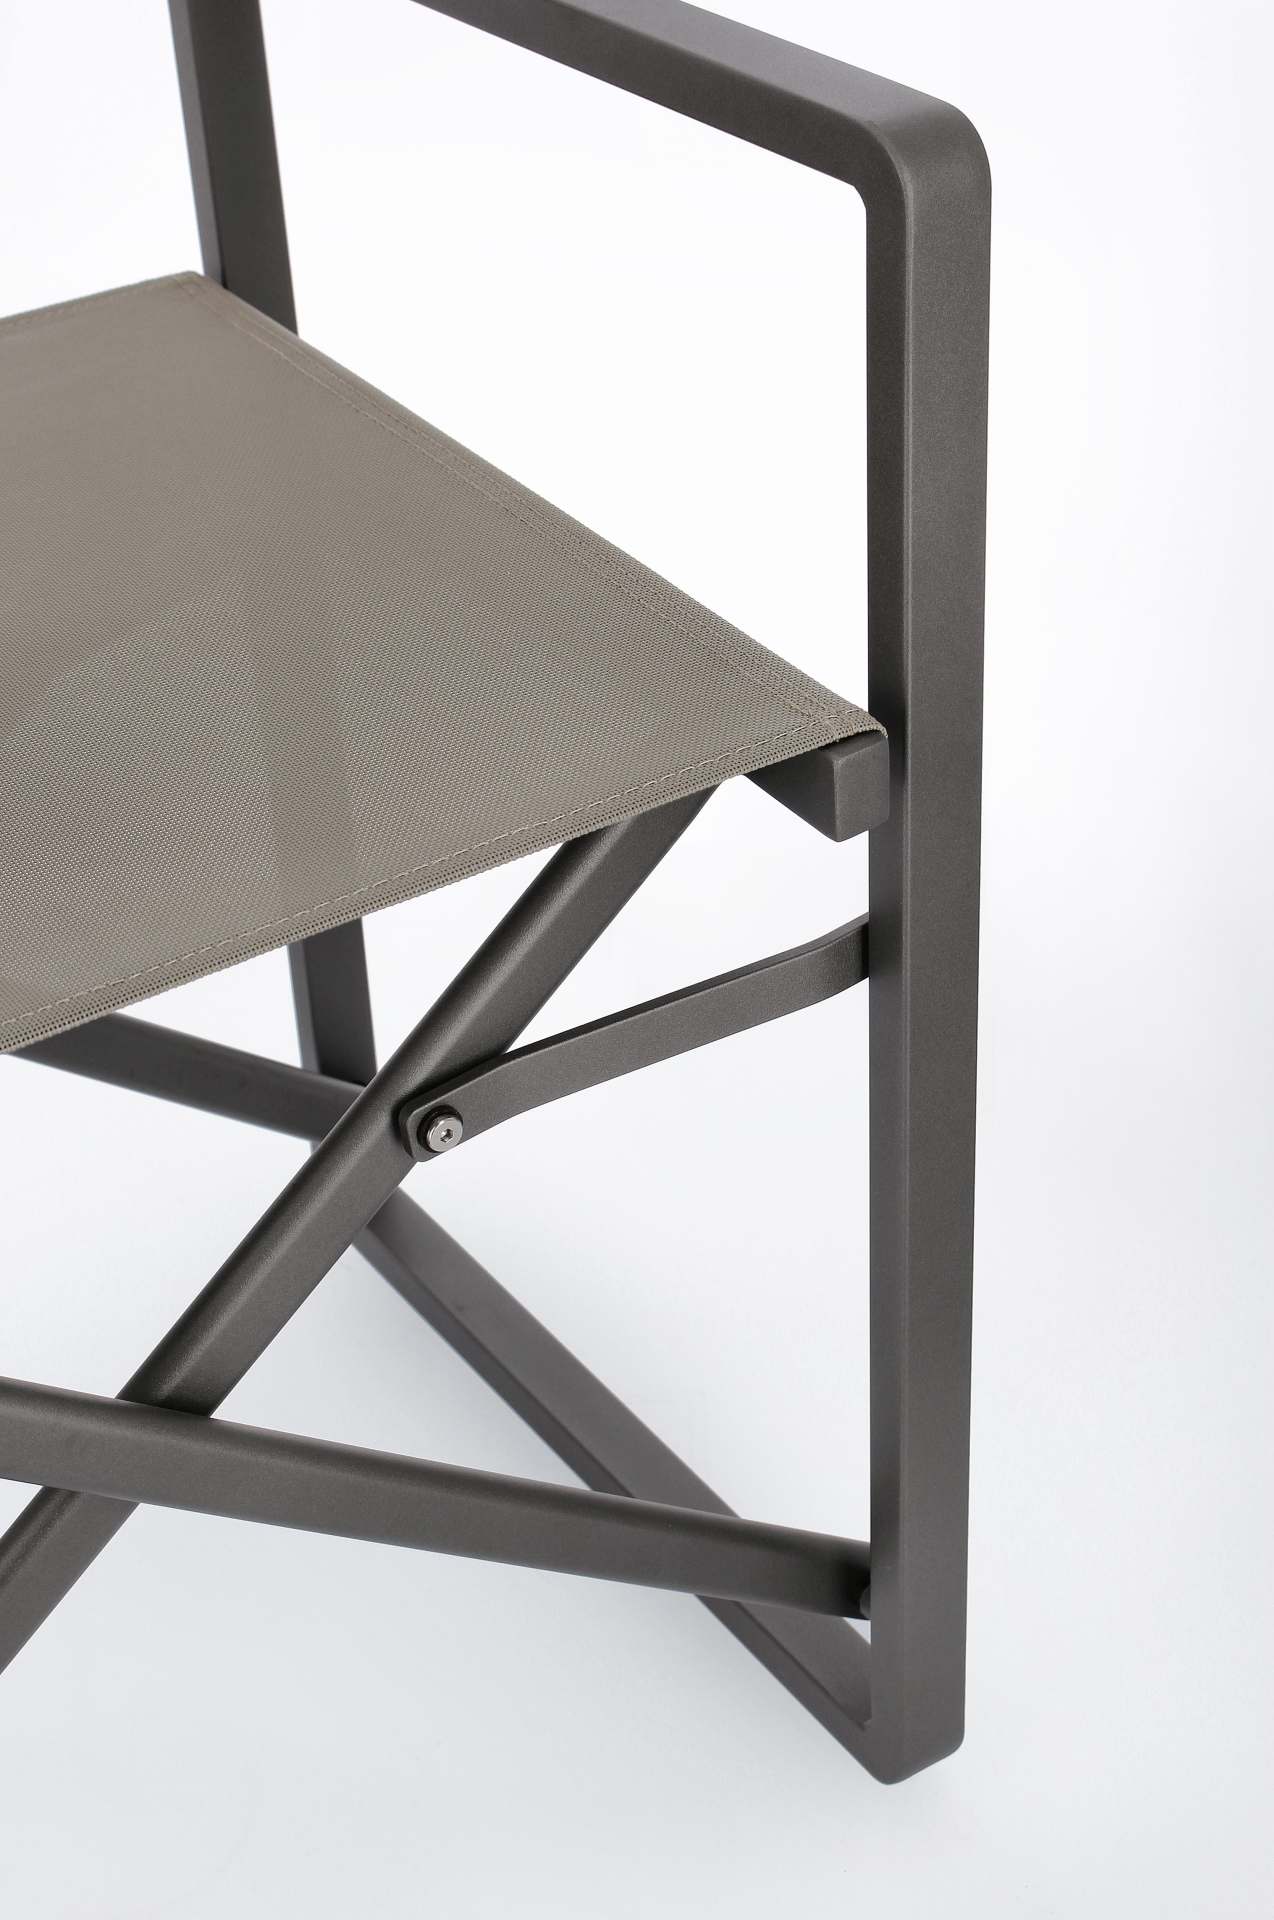 Der Gartenstuhl Konnor überzeugt mit seinem modernen Design. Gefertigt wurde er aus Textilene, welche einen Anthrazit Farbton besitzt. Das Gestell ist aus Aluminium und hat auch eine Anthrazit Farbe. Der Stuhl verfügt über eine Sitzhöhe von 46 cm und ist 